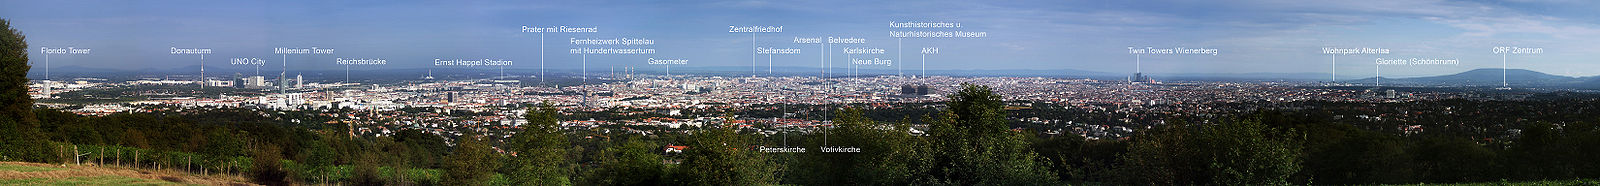 Panorama von Wien vom „Himmel“ aus gesehen (2005)